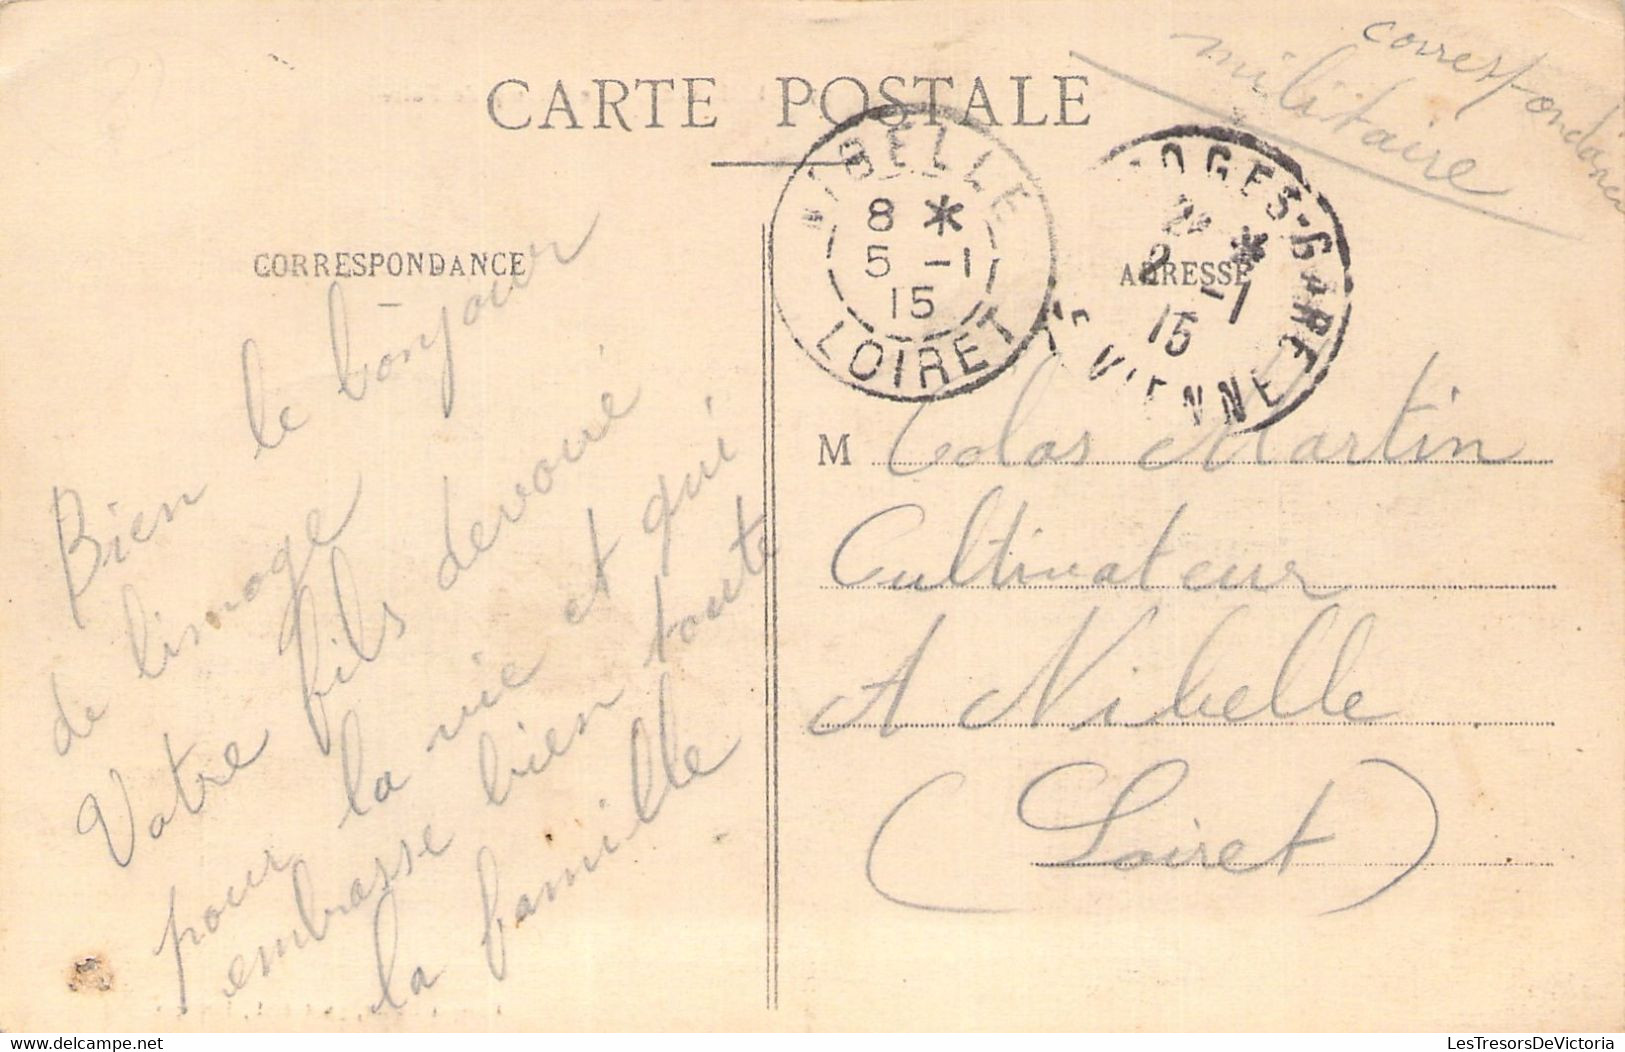 MARCHES - Limoges - Le Champ De Foire - Carte Postale Ancienne - Marktplaatsen